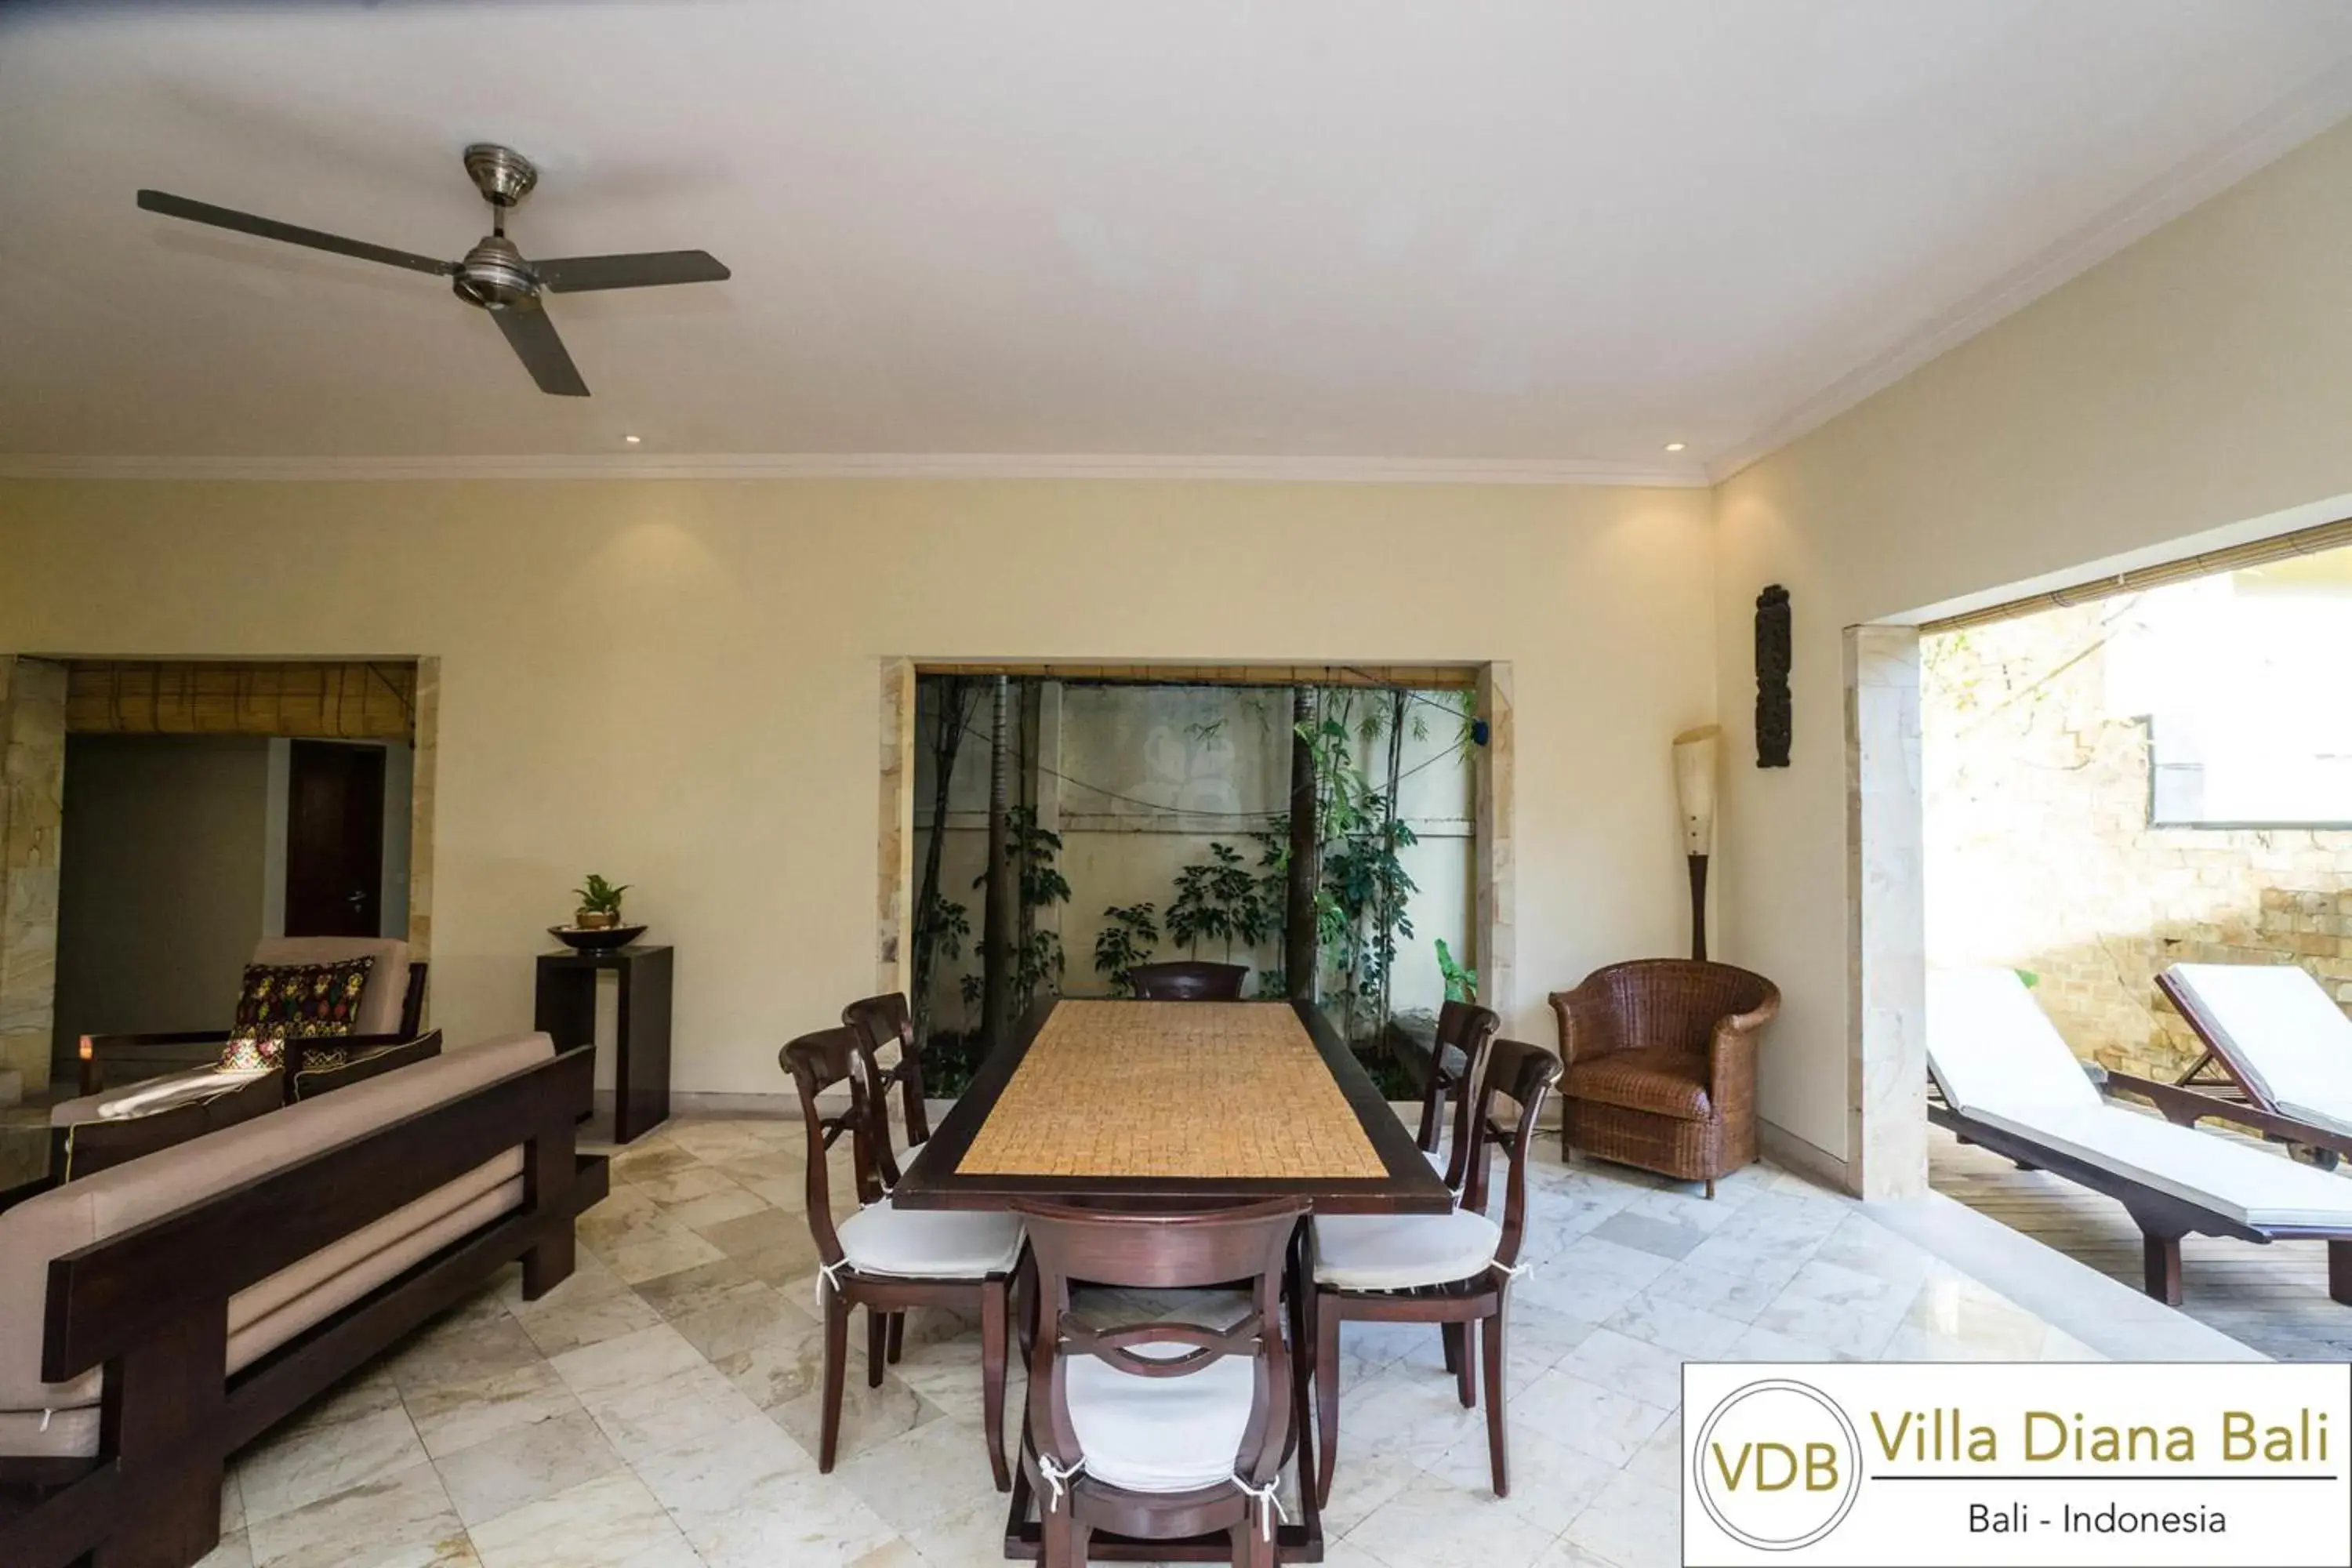 Living room, Dining Area in Villa Diana Bali